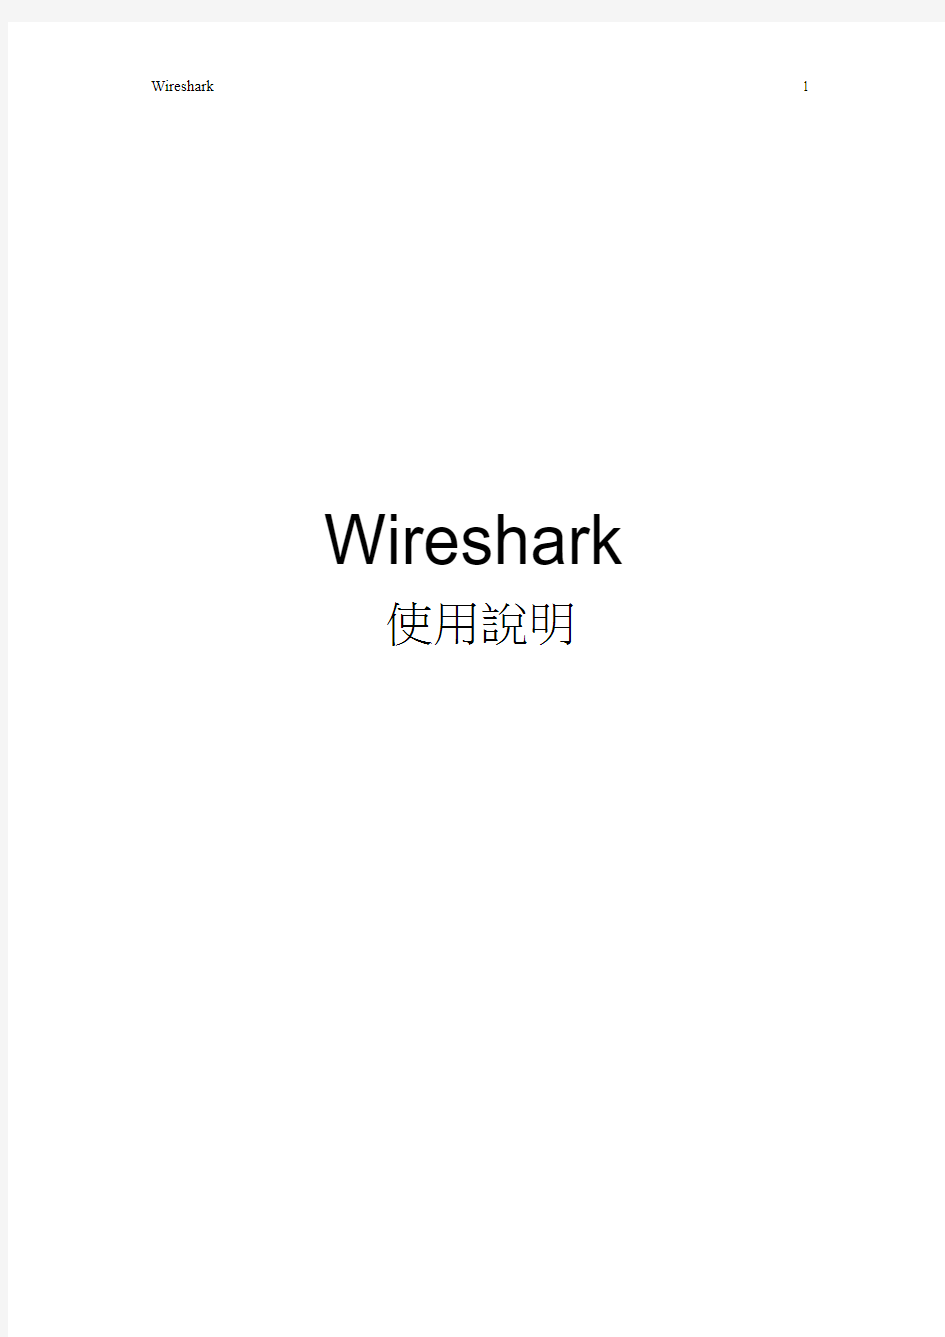 Wireshark使用说明